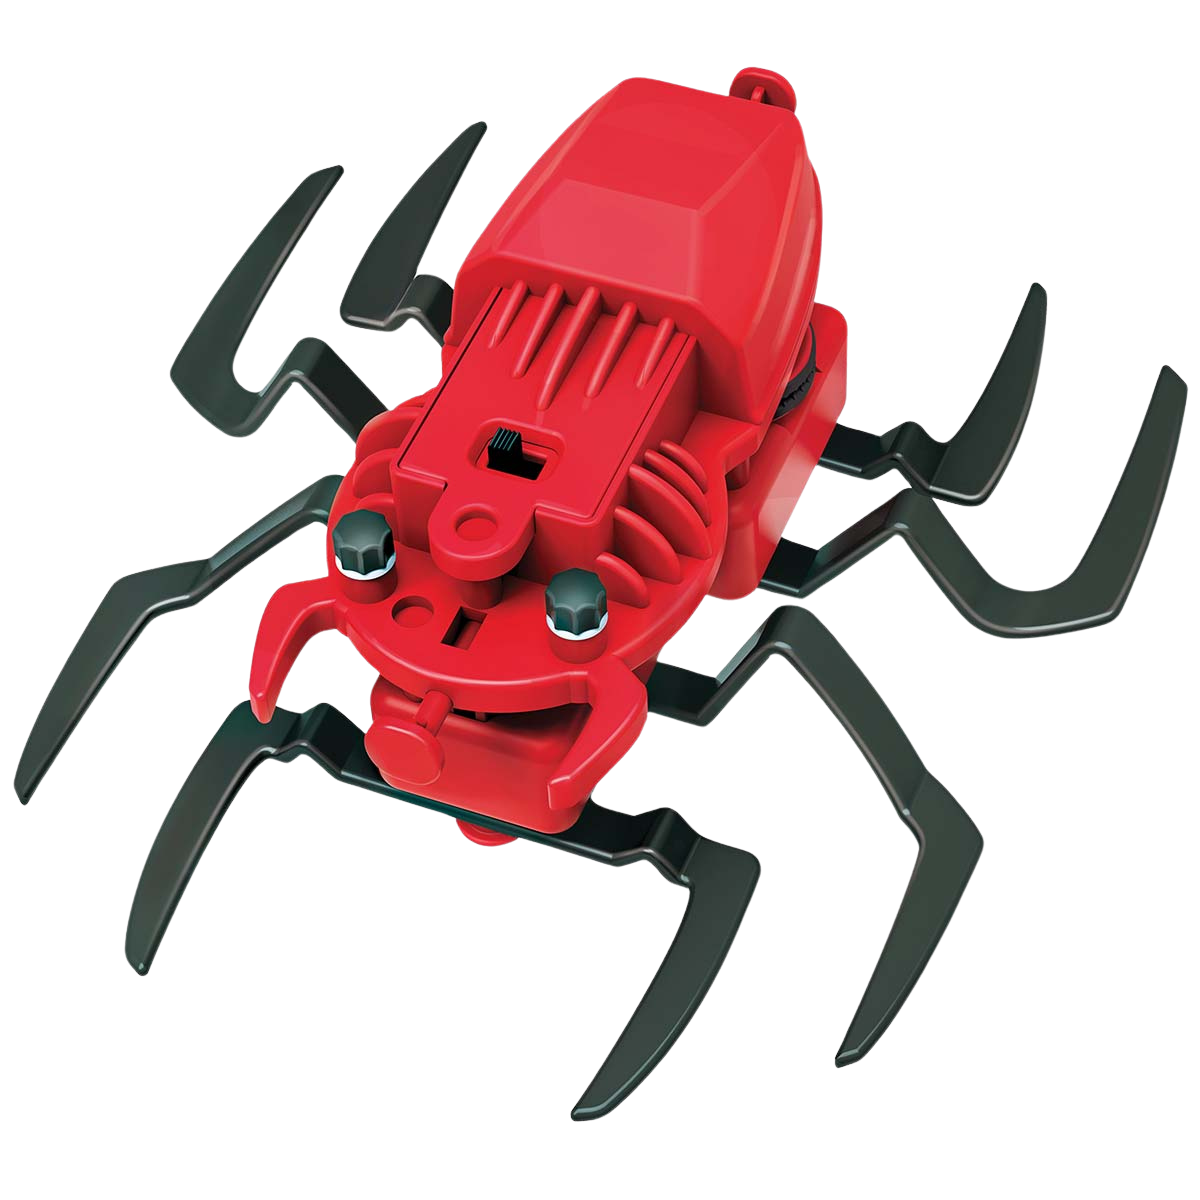 Spider Robot KidzRobotix